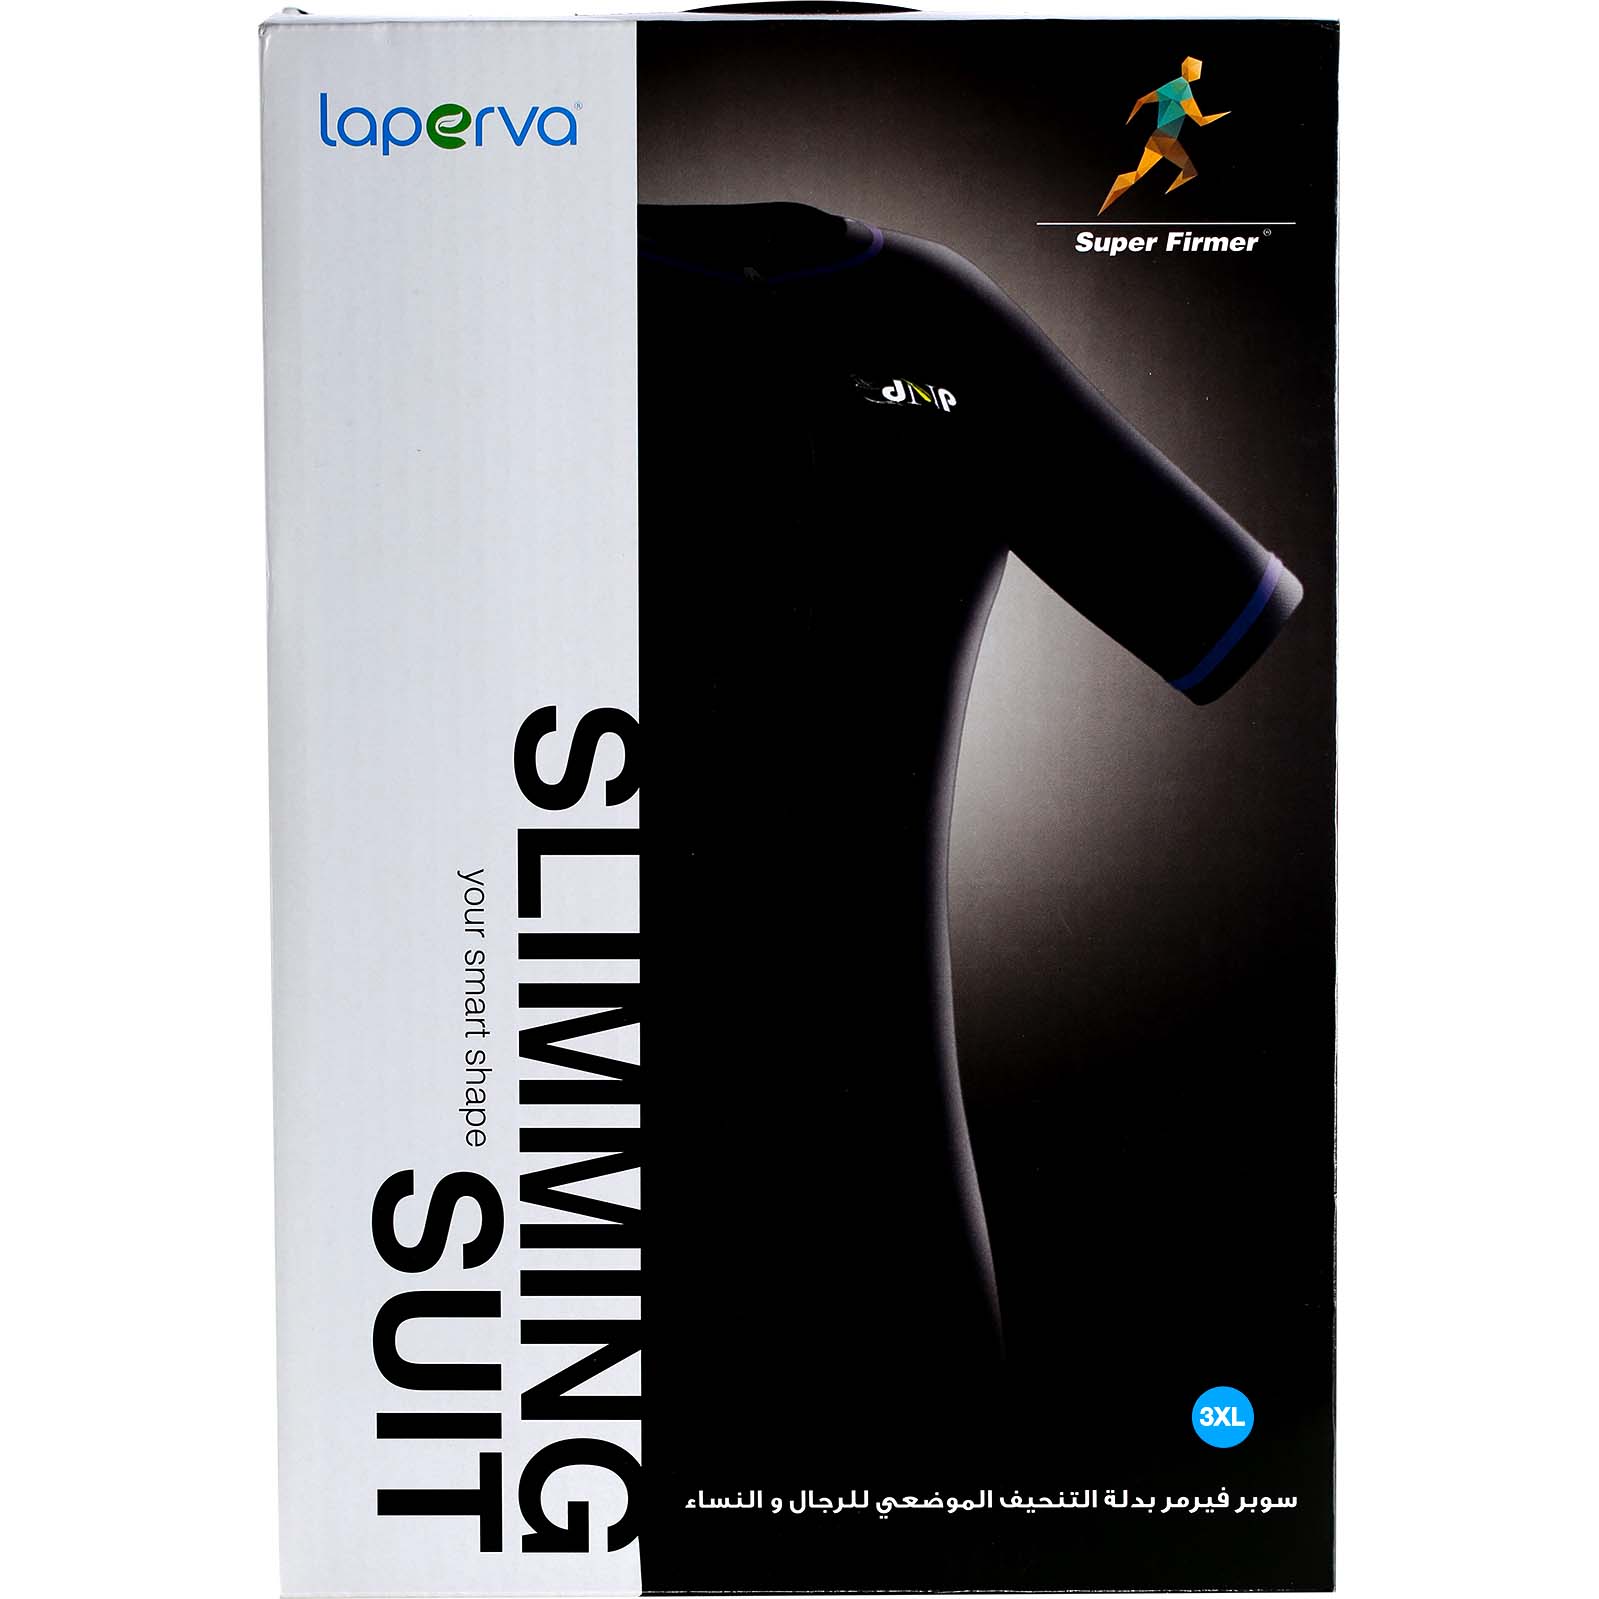 Laperva Slimming Suit, 3 XL, Black